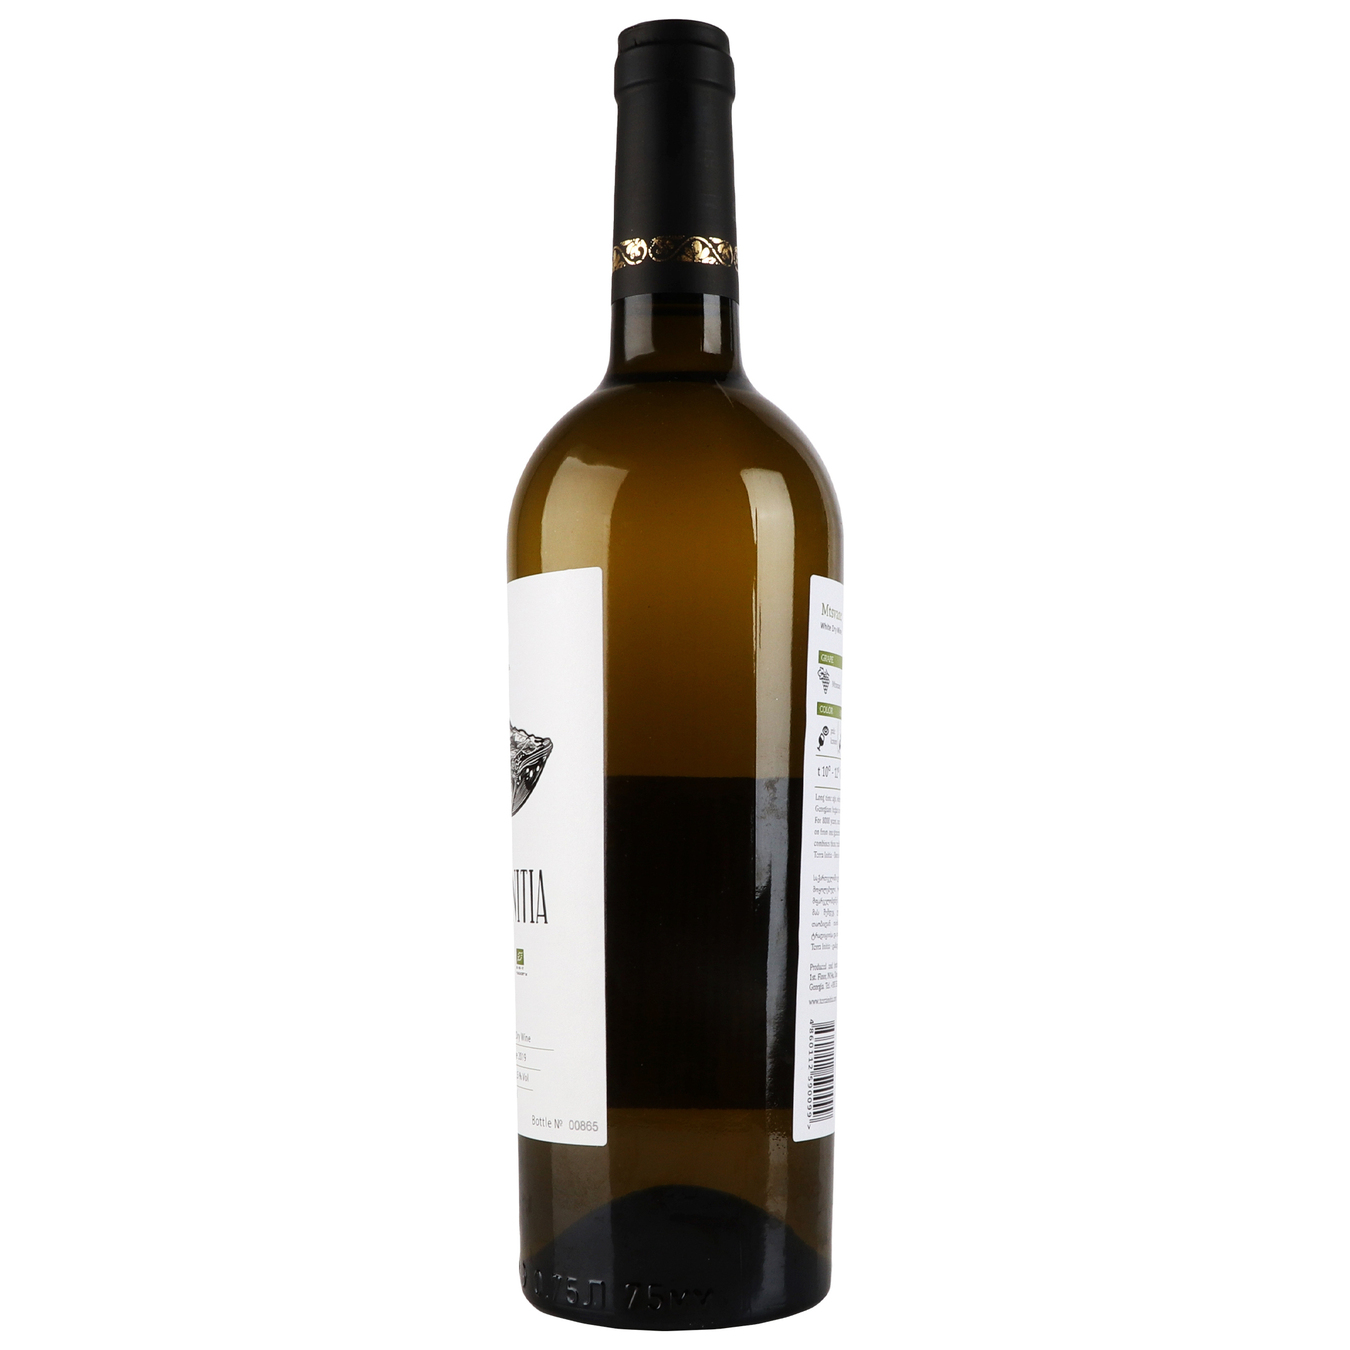 Terra Initia Mtsvane white dry wine 13.0% 0.75 l 2